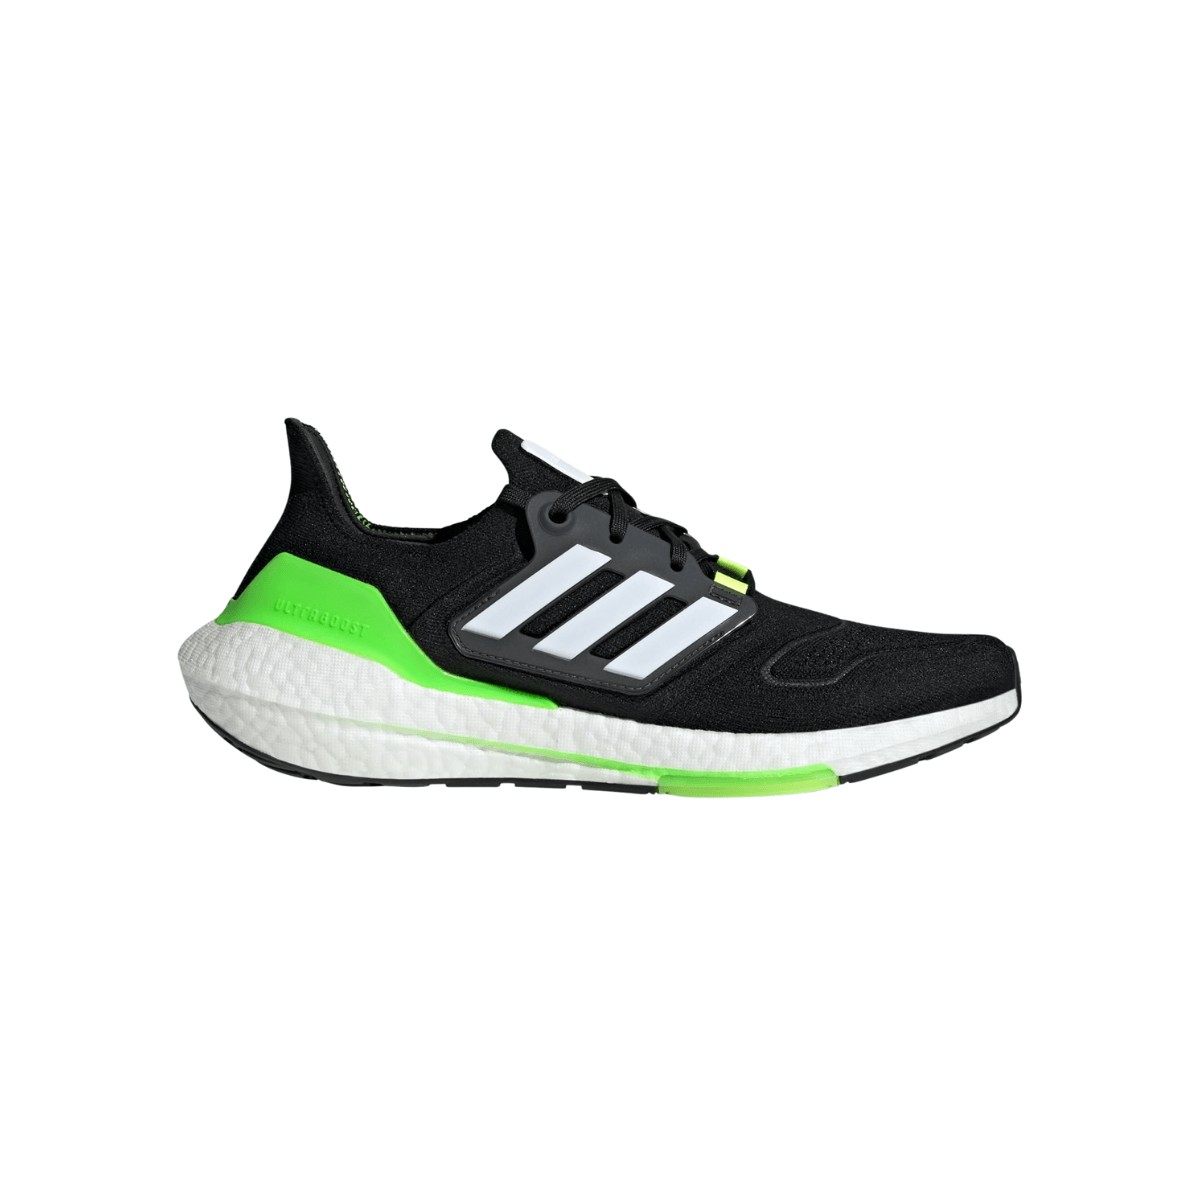 milla nautica interno etc. Adidas Ultraboost 22: características y opiniones - Zapatillas running |  Runnea